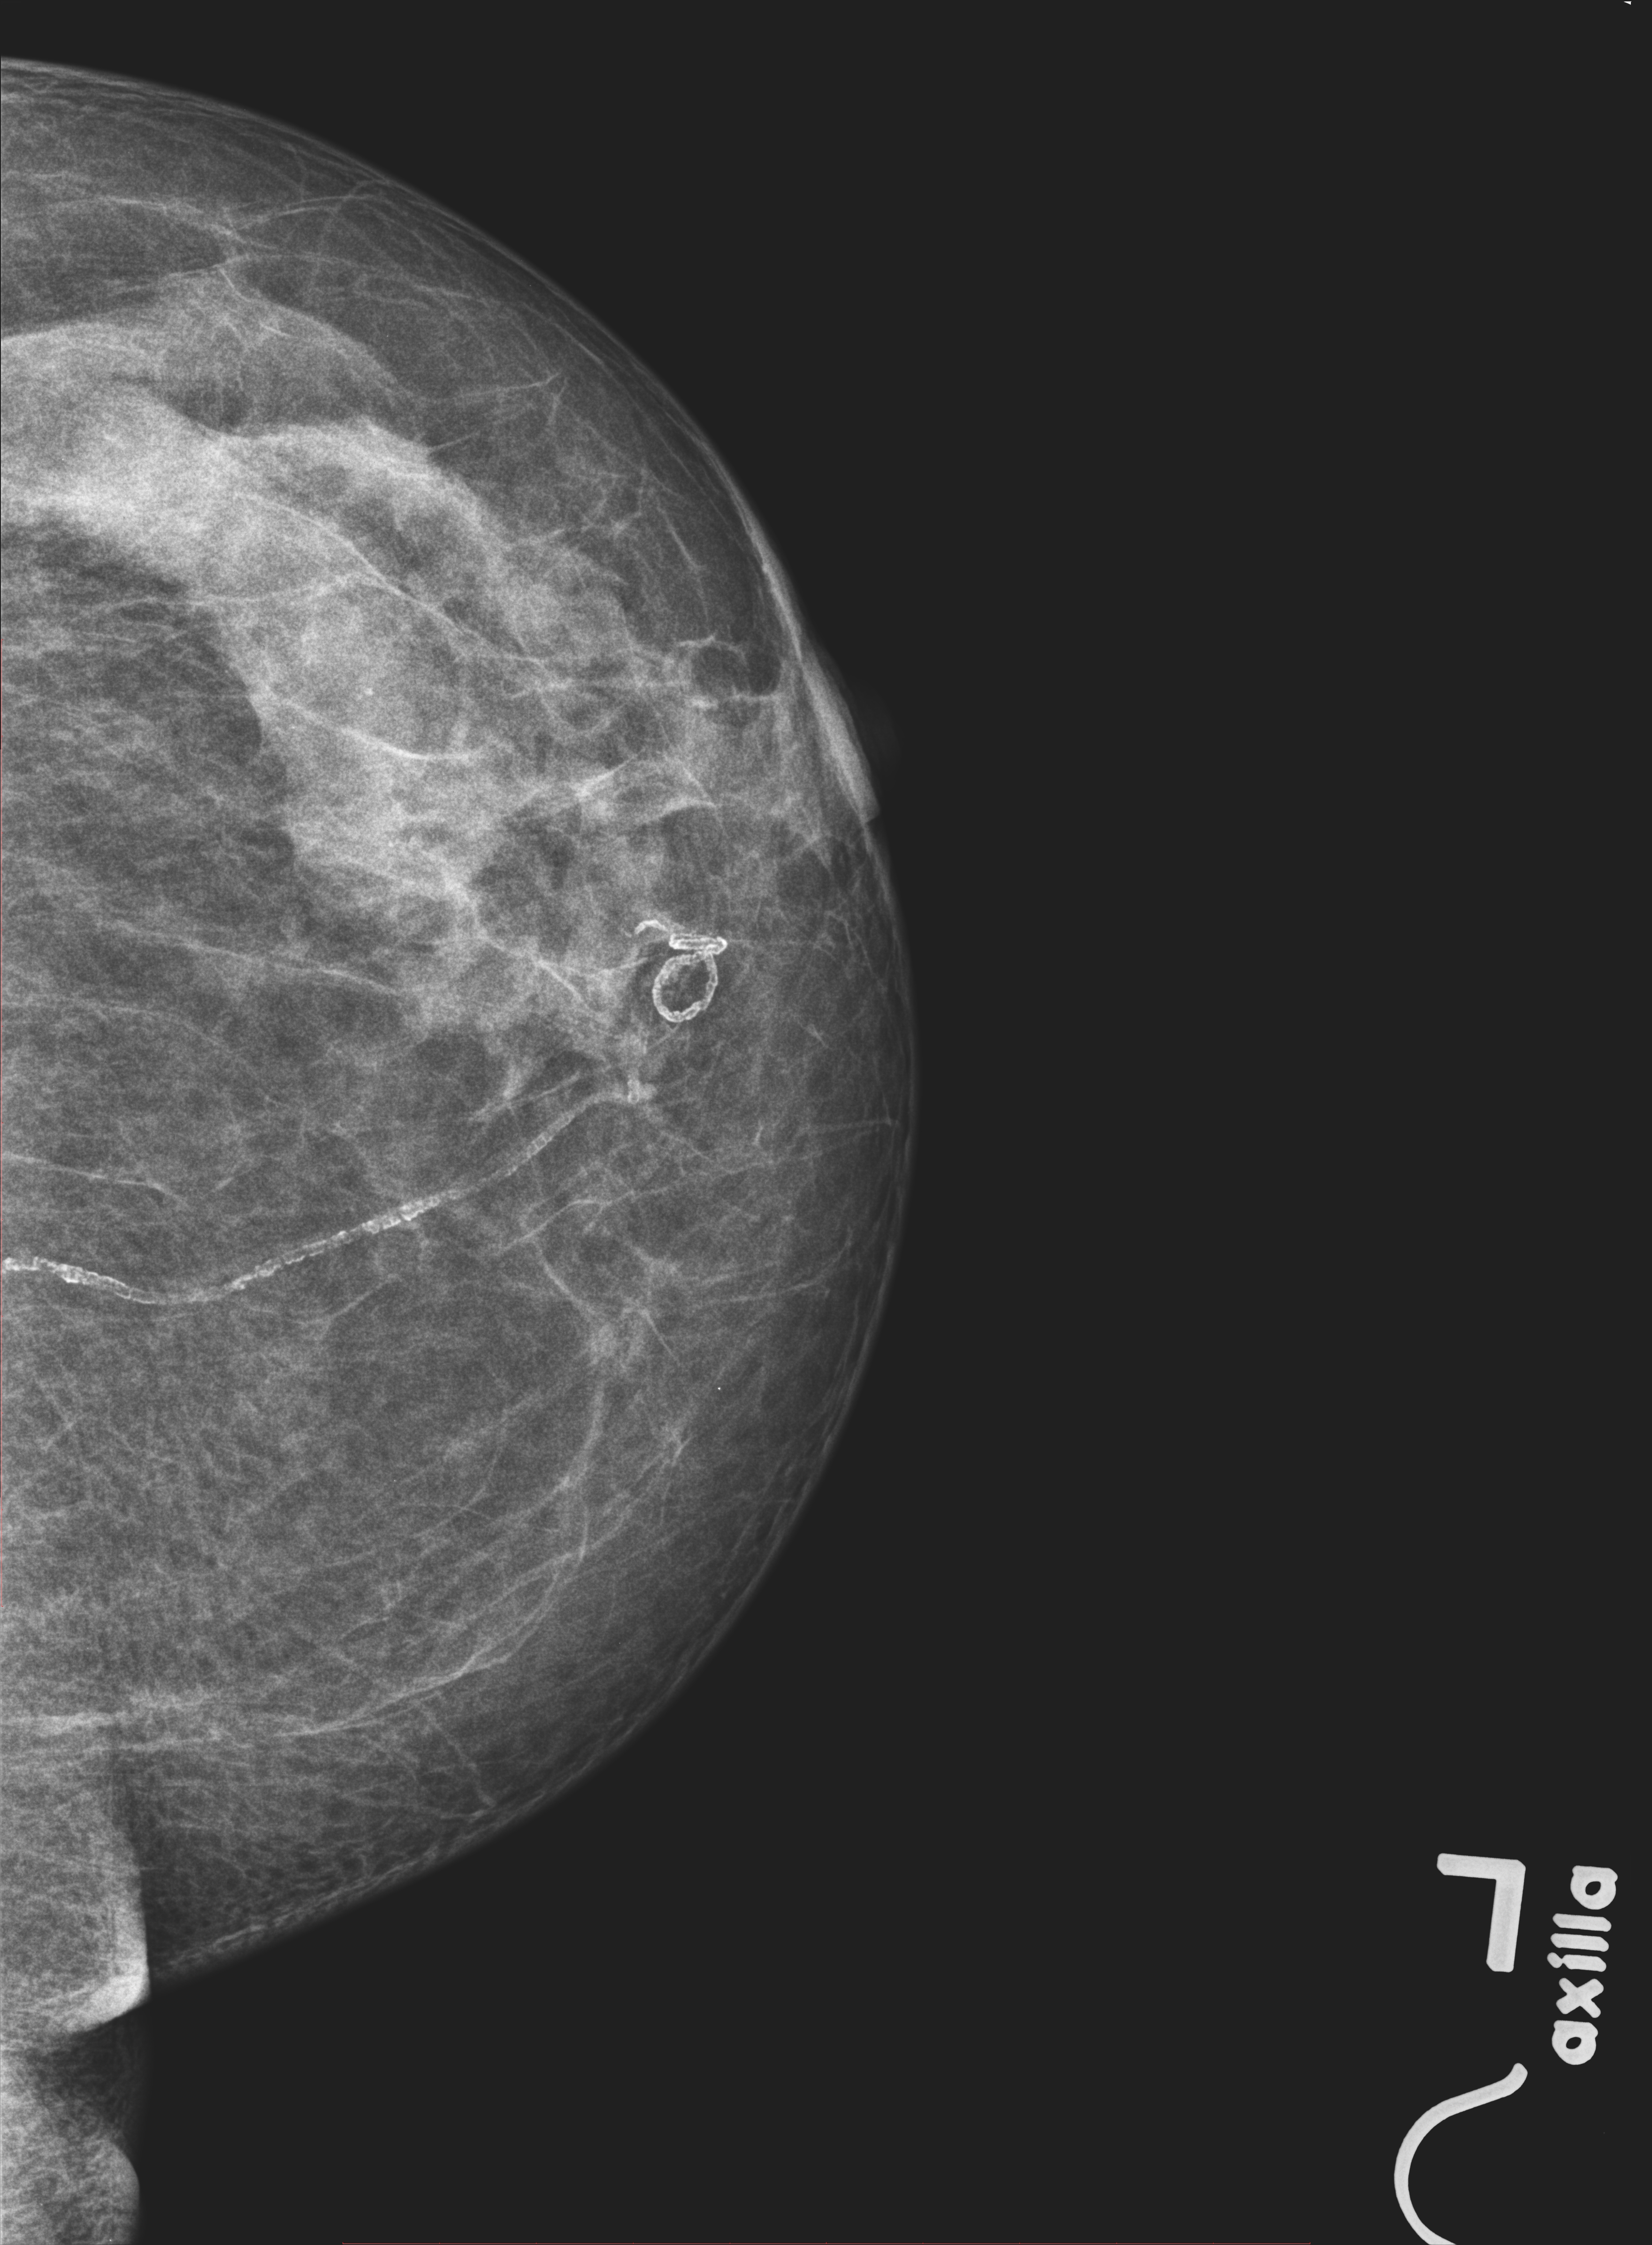 что такое маммография молочных желез фото